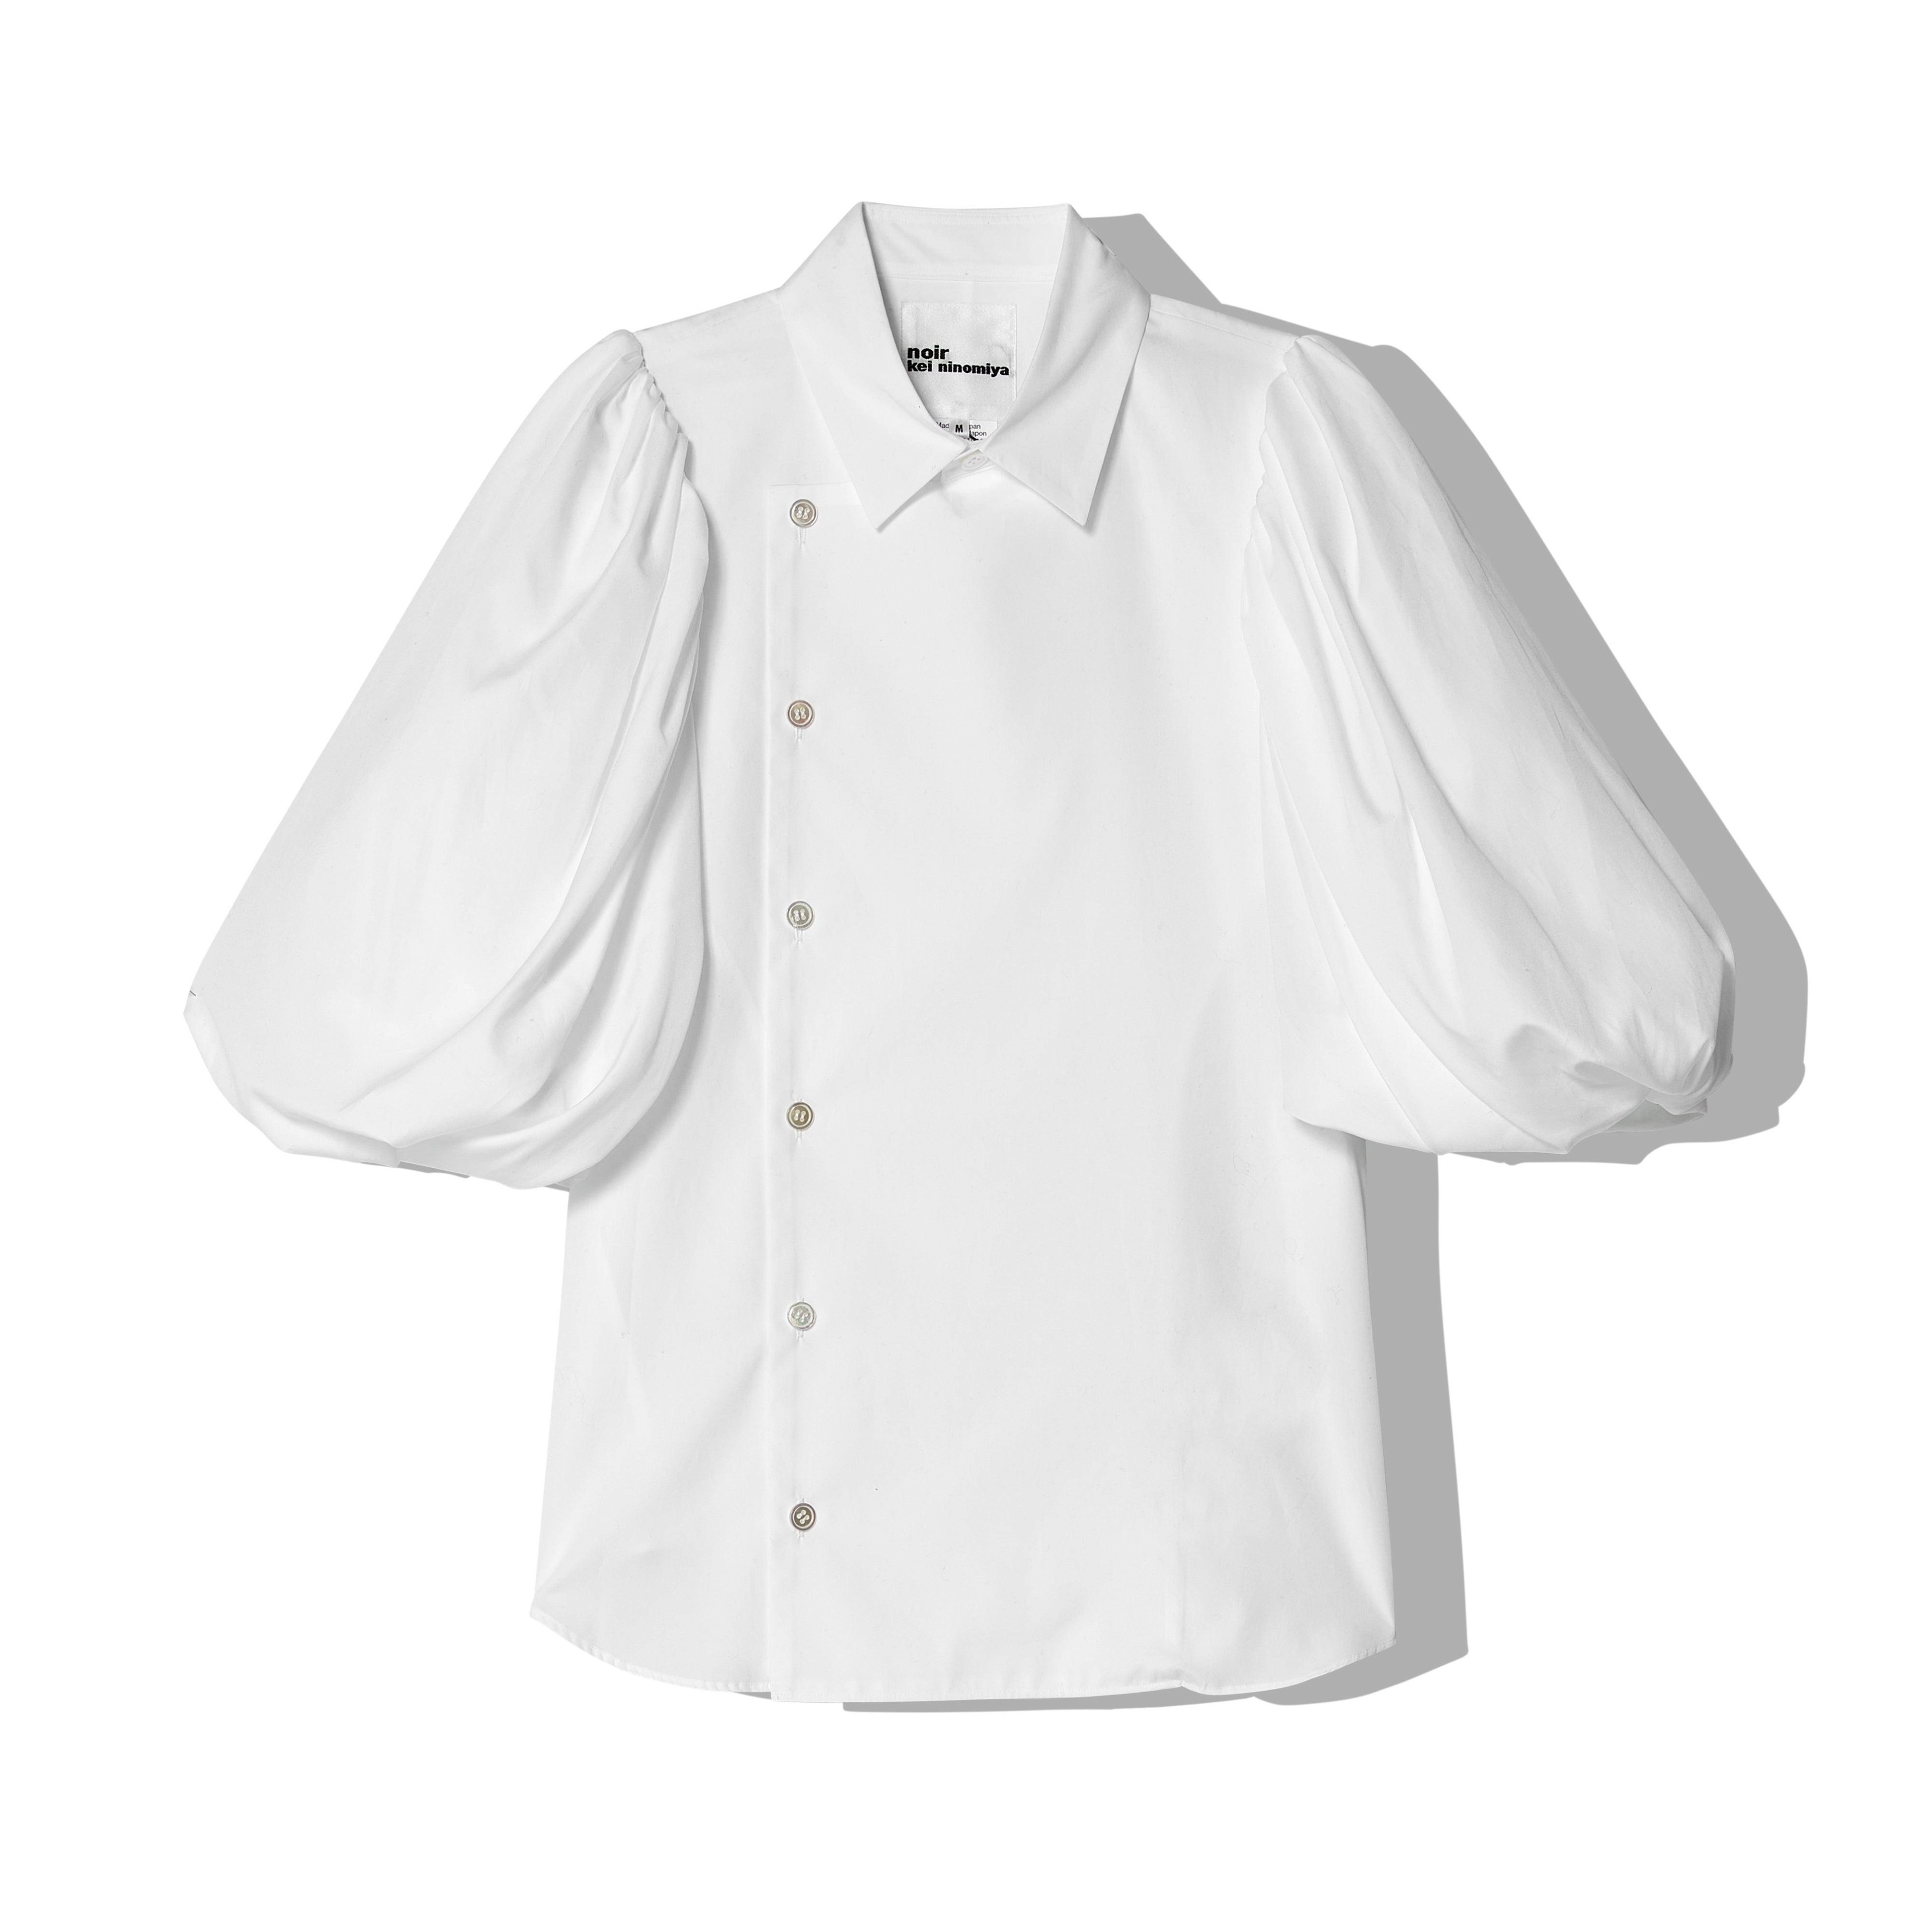 Noir Kei Ninomiya - Women's Cotton Ruffled Sleeve Shirt - (White) by NOIR KEI NINOMIYA